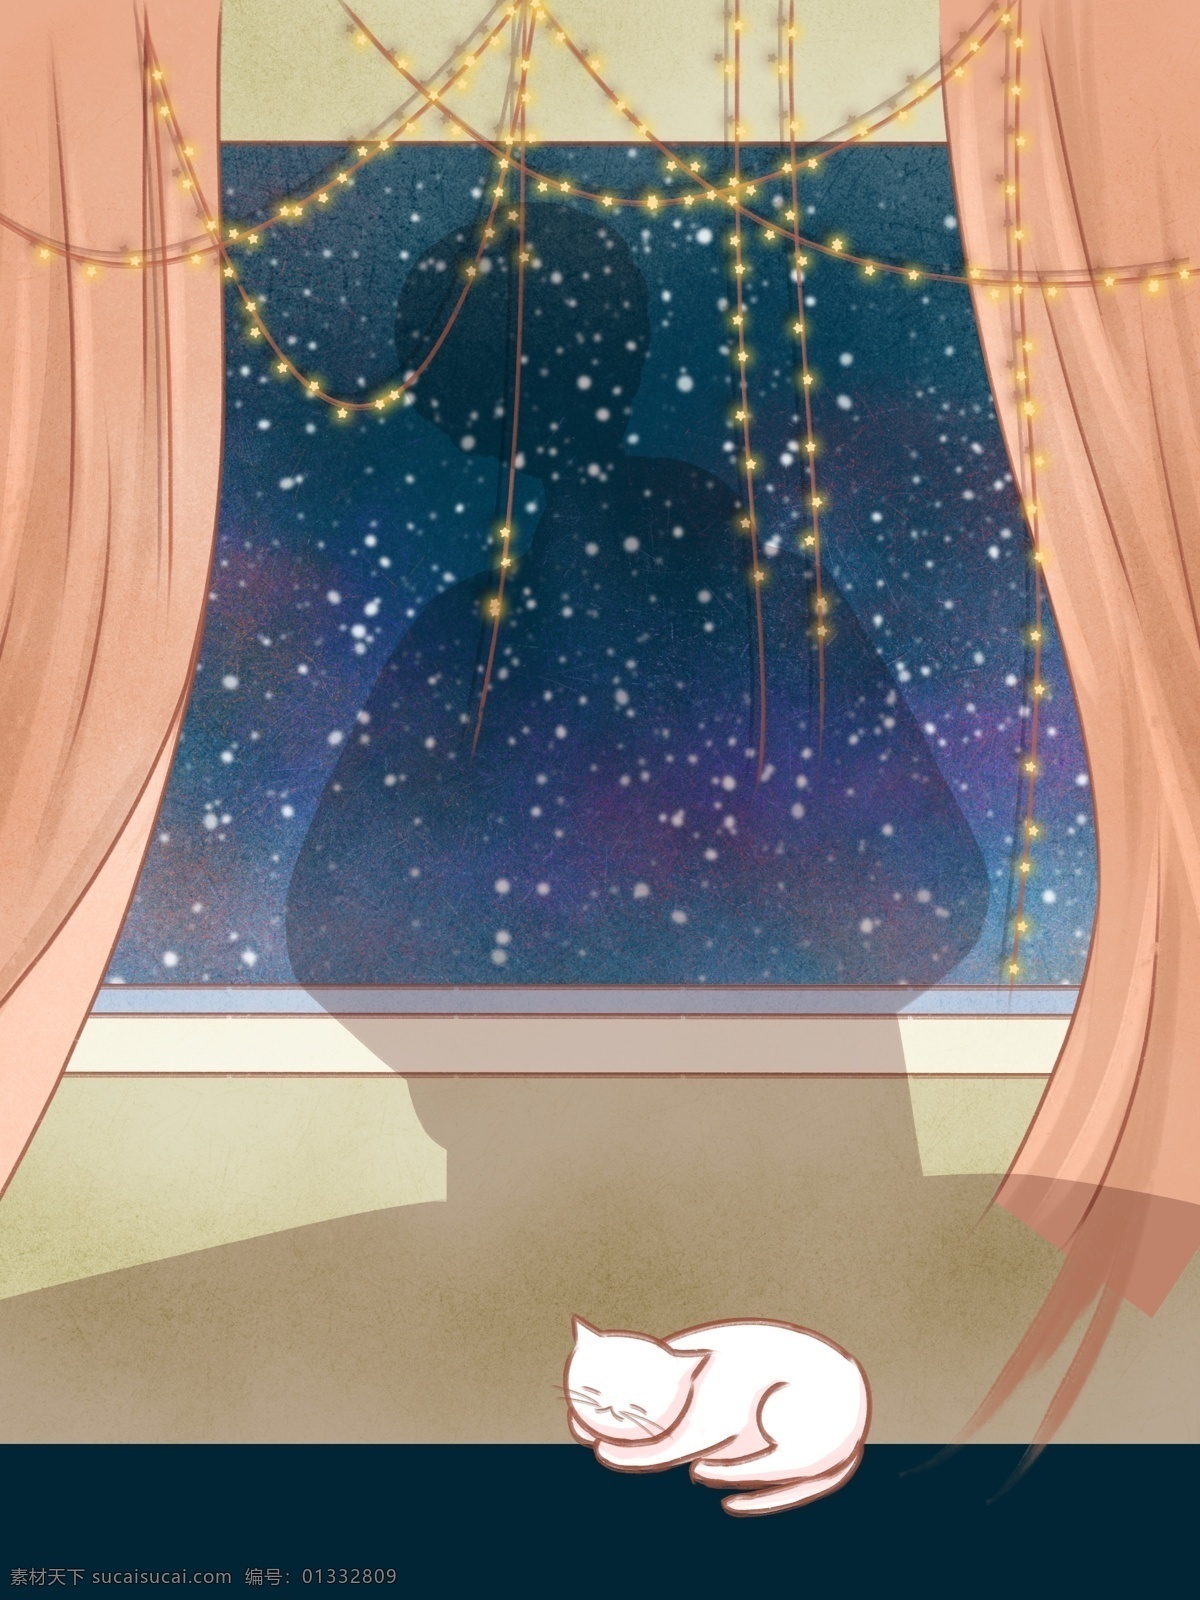 彩绘 冬季 彩灯 家居 小猫 背景 星空 窗户 广告背景 彩绘背景 特邀背景 促销背景 背景展板图 背景图